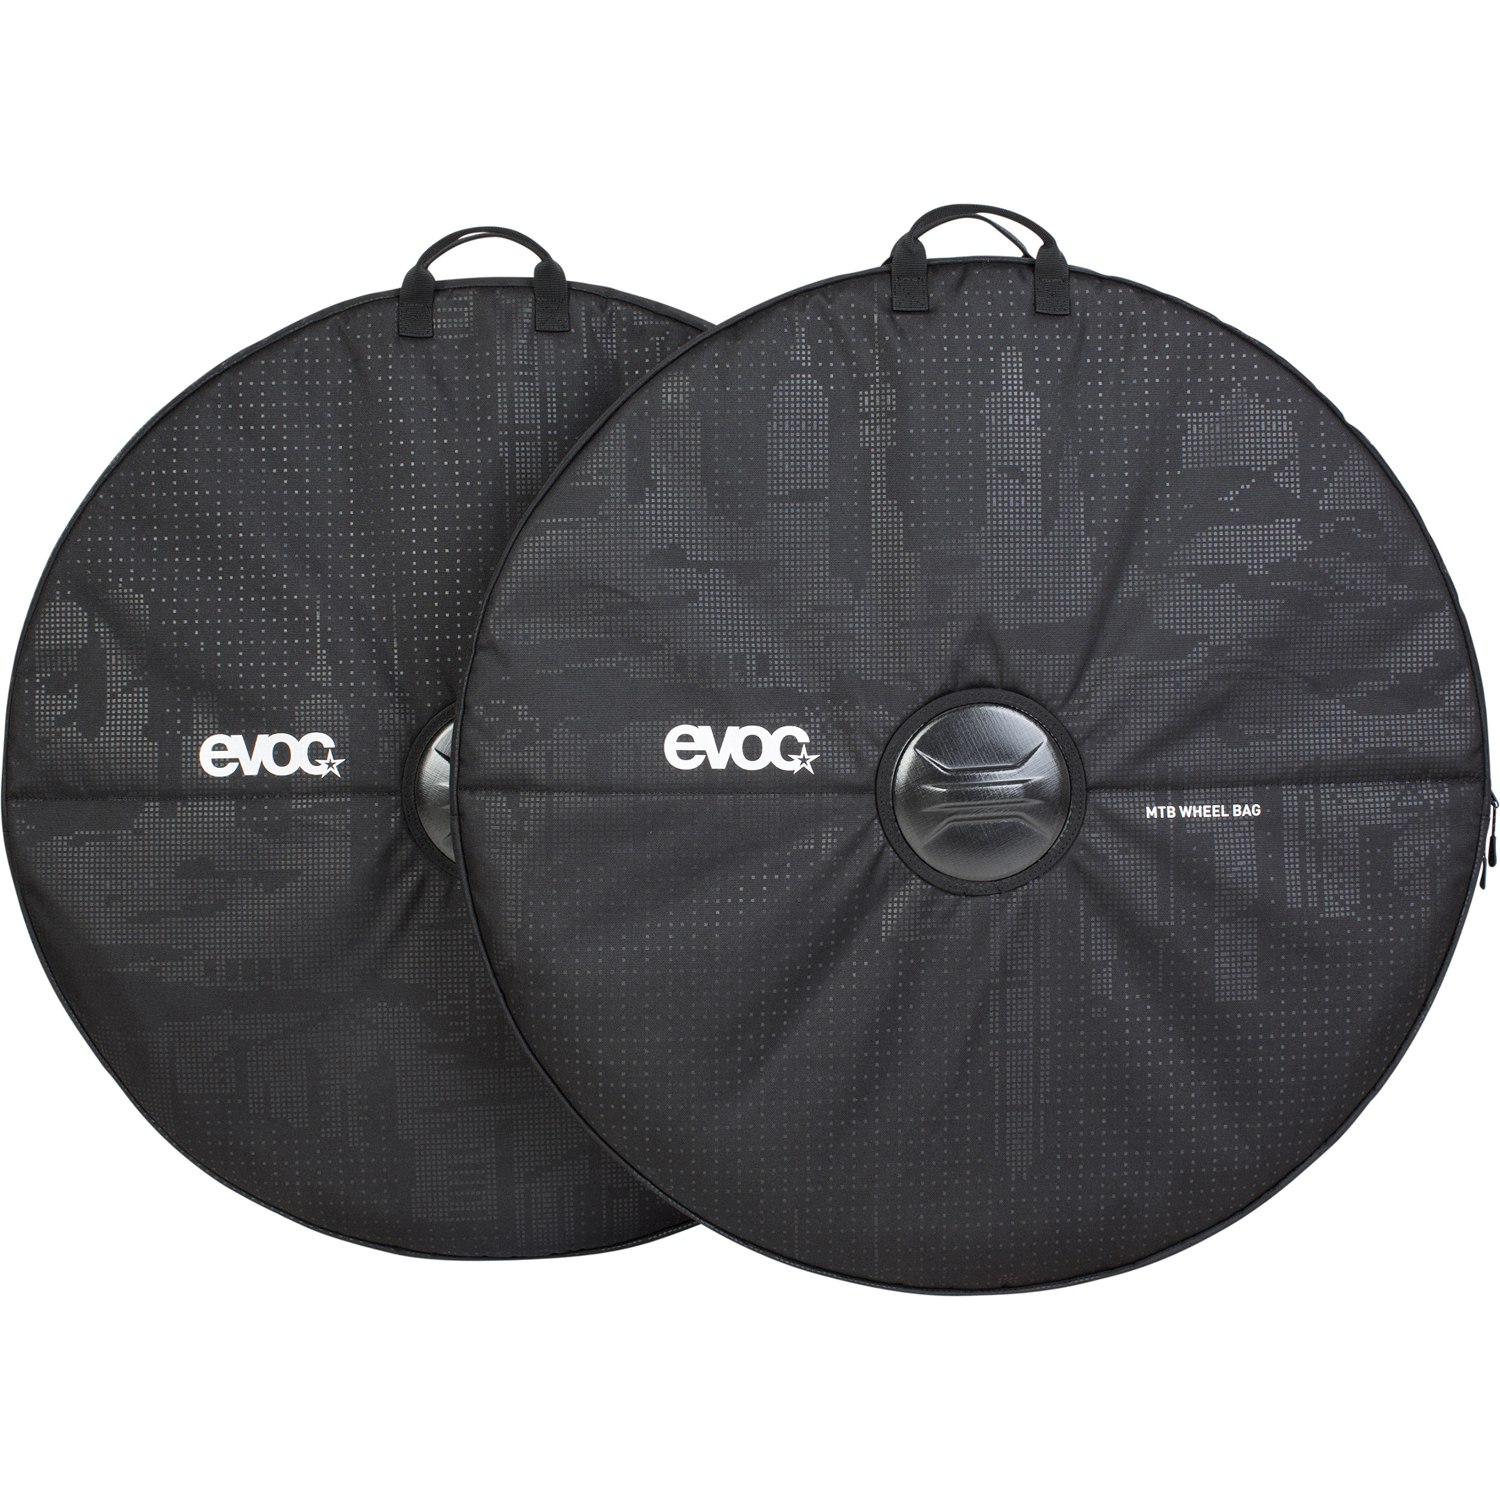 Produktbild von Evoc MTB WHEEL BAG - Reifentasche Set (2 Stück) - Black